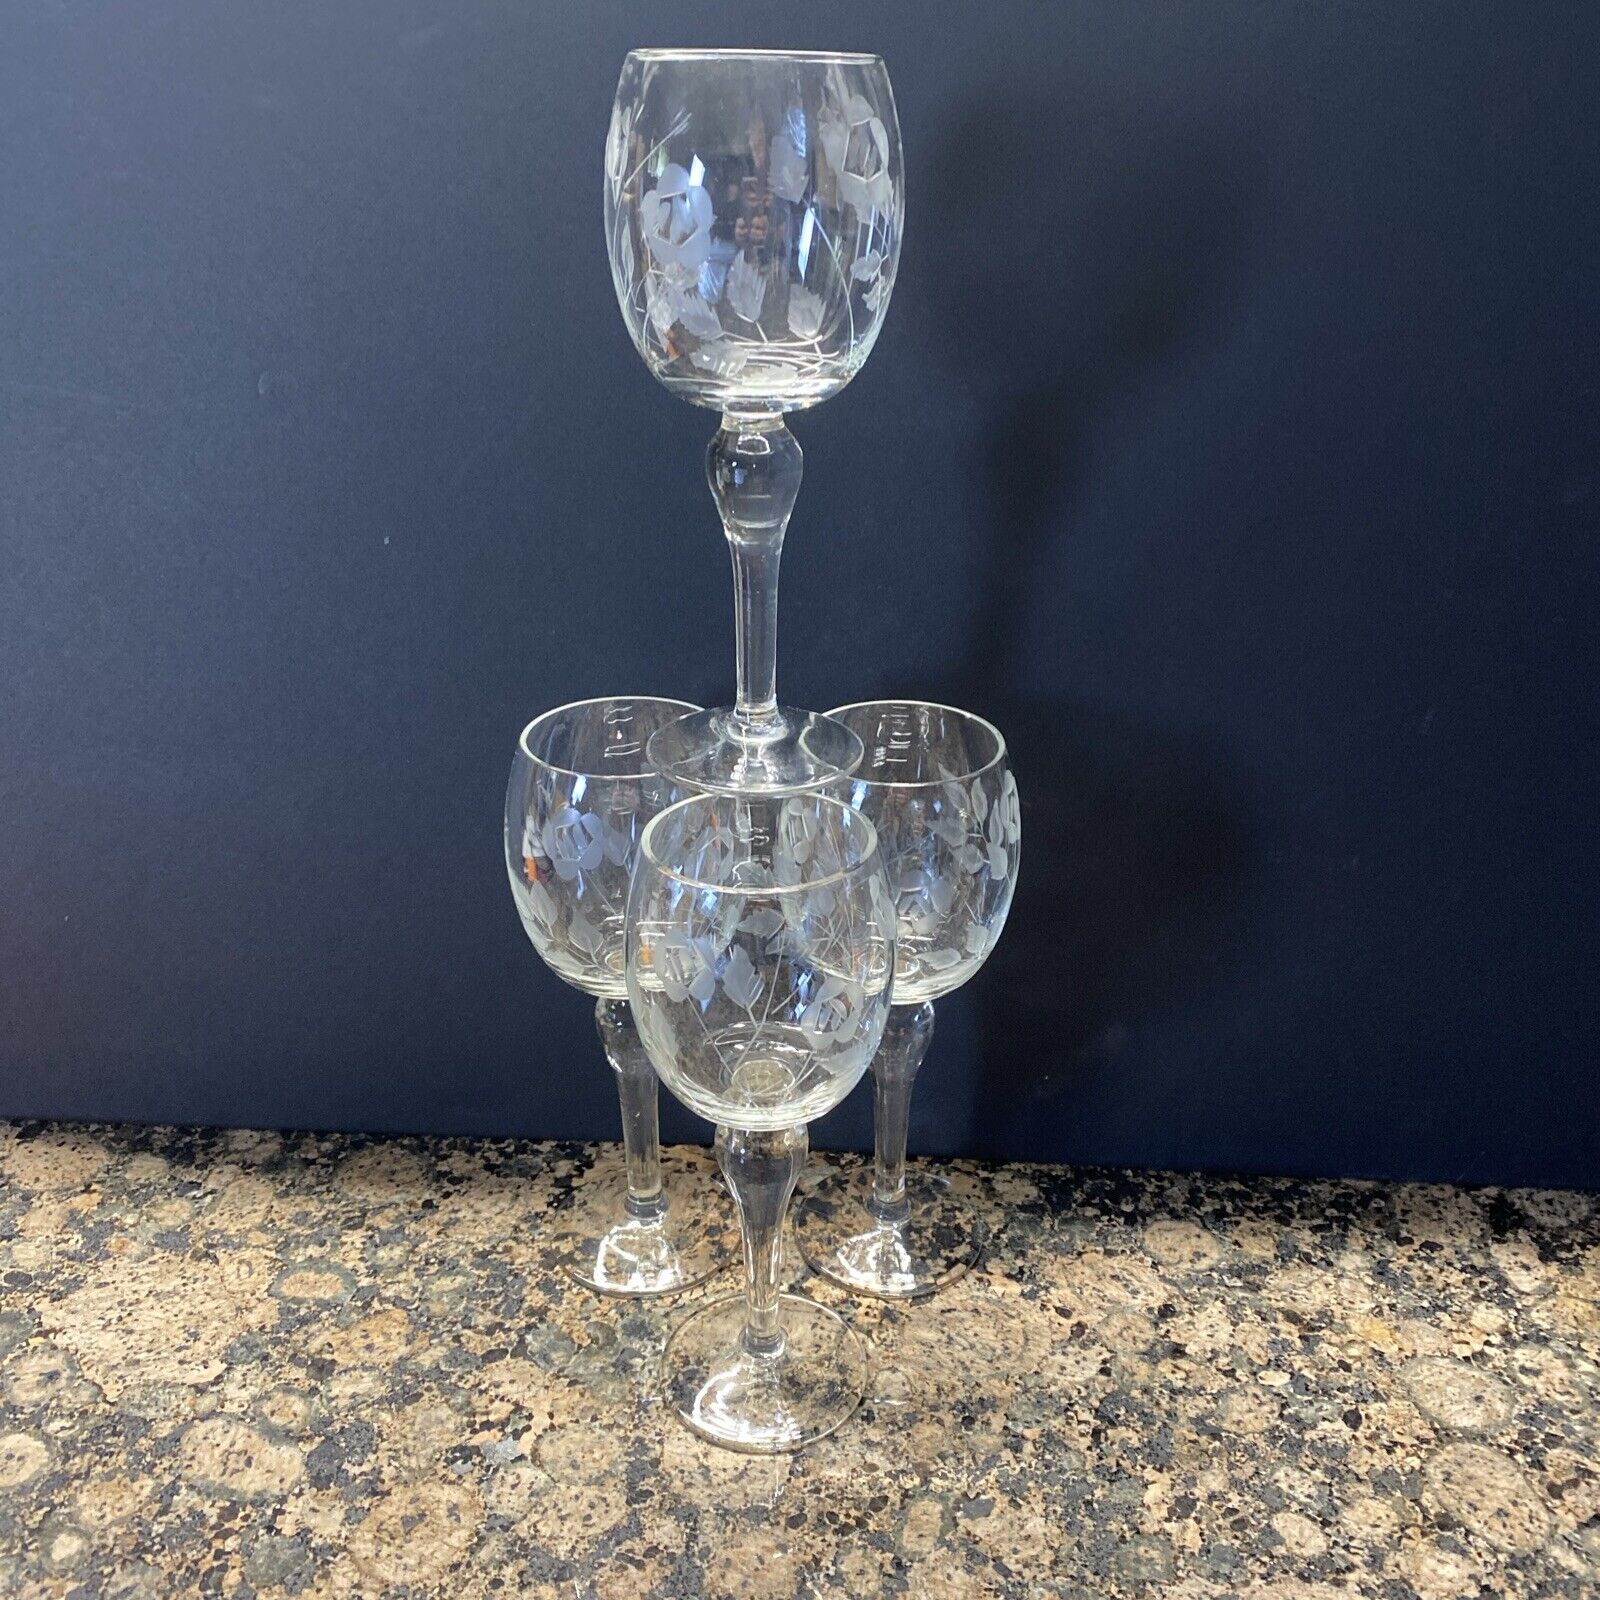 Vintage Wine Glasses Chrystal Etched Floral Design set of 4